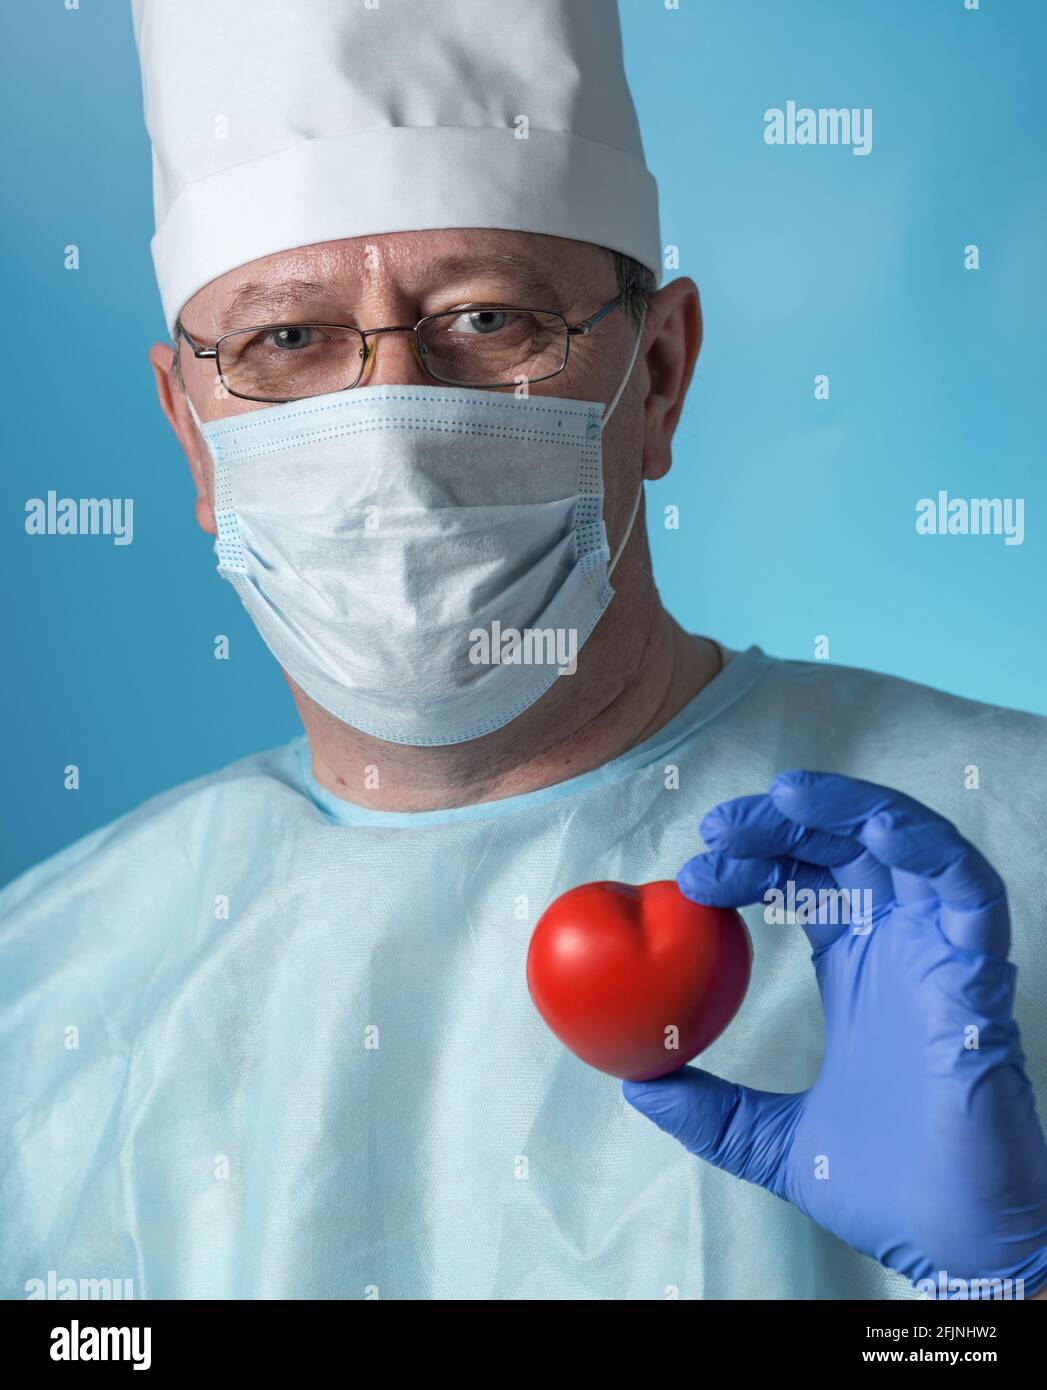 Ritratto di un cardiologo esperto di mezza età in abbigliamento medico:  Cappuccio, guanti, vestaglia e maschera, occhiali. Nelle mani di Foto stock  - Alamy